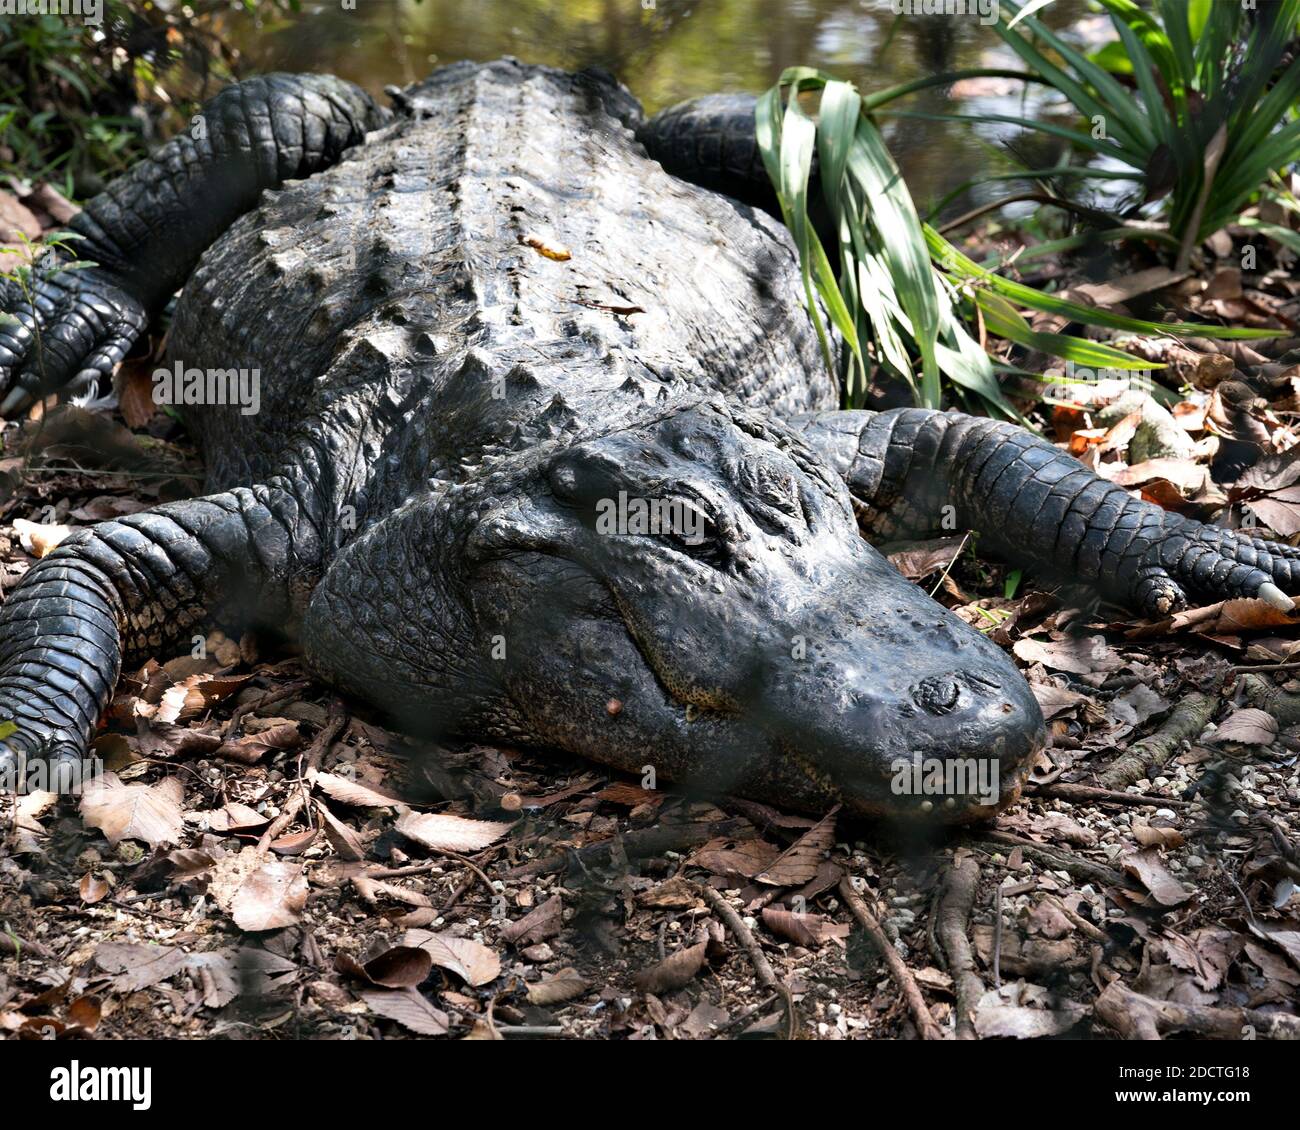 Alligatore riposato in acqua e godendo del suo habitat e ambiente. Alligator Stock foto. Foto di stock di alligatori. Immagine. Immagine. Verticale. Foto Stock